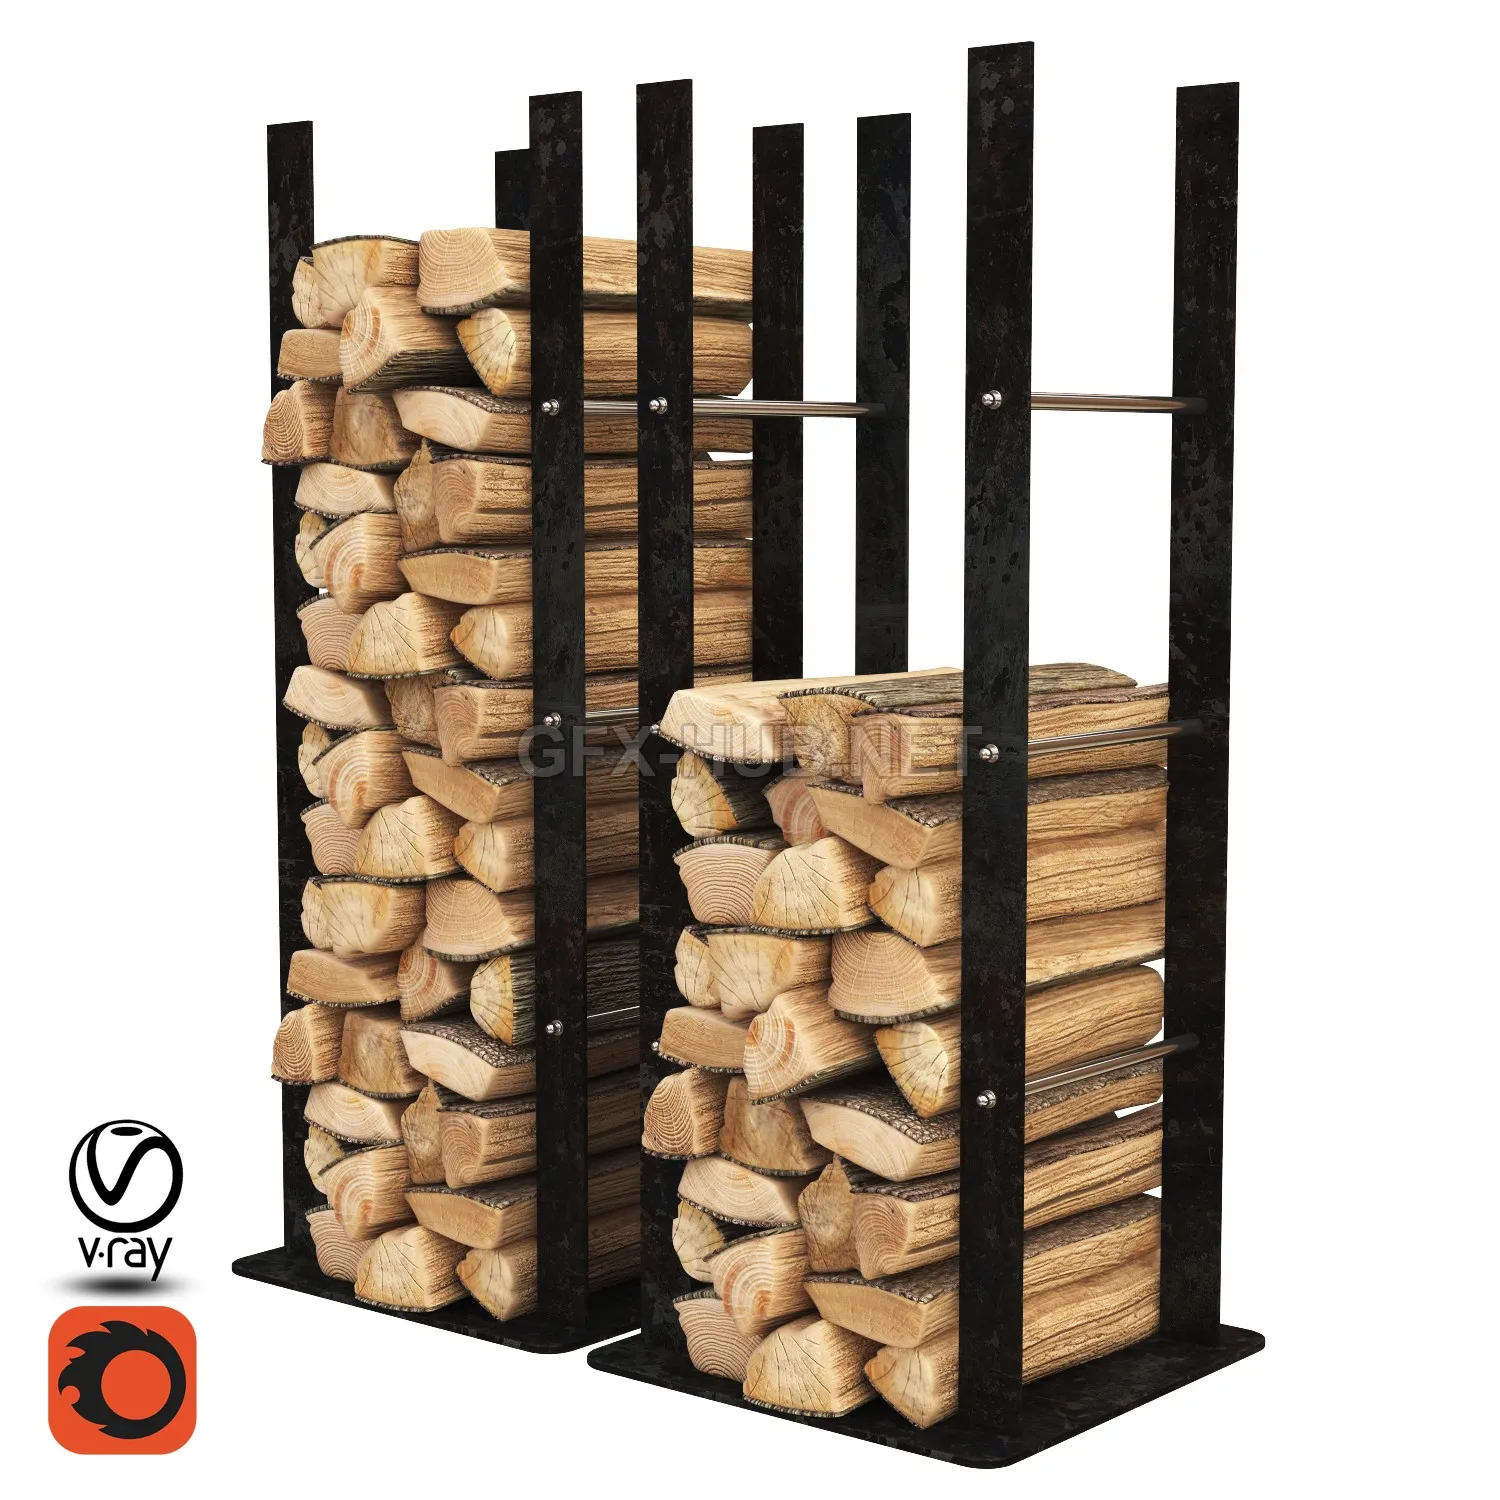 FURNITURE 3D MODELS – Firewood Storage Rack